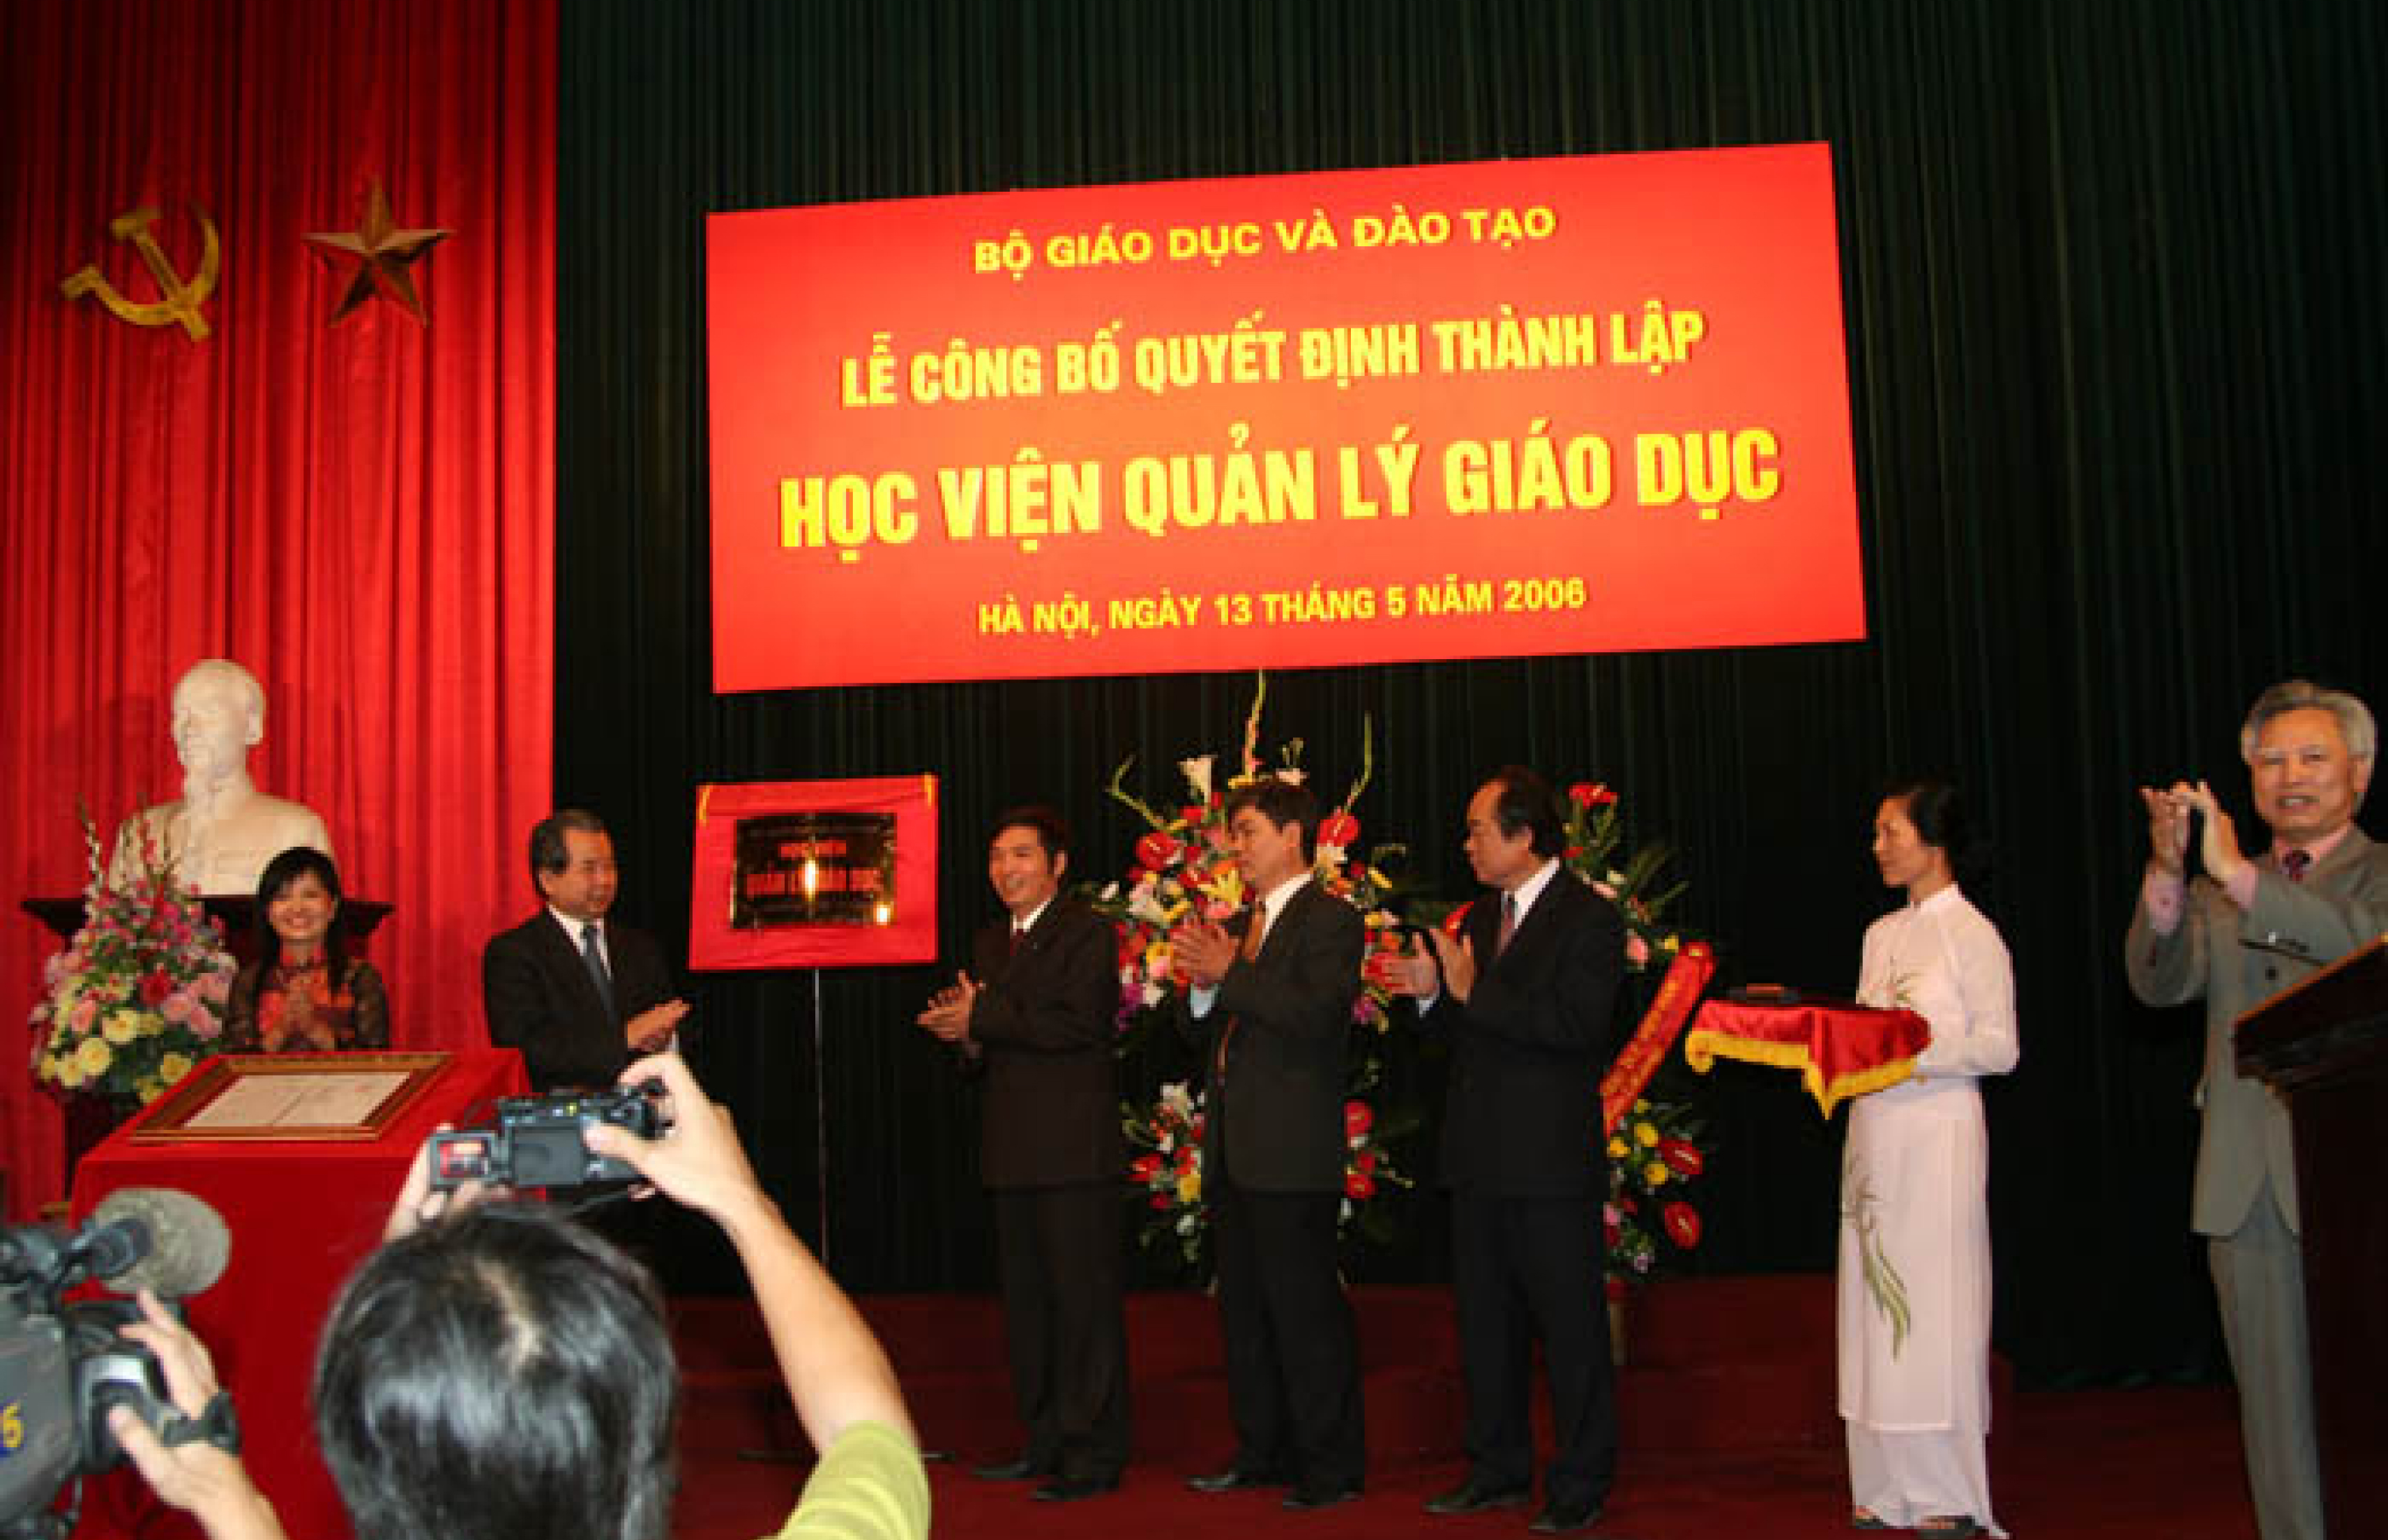 Lễ công bố quyết định thành lập "Học viện Quản lý Giáo dục" (13/05/2006)